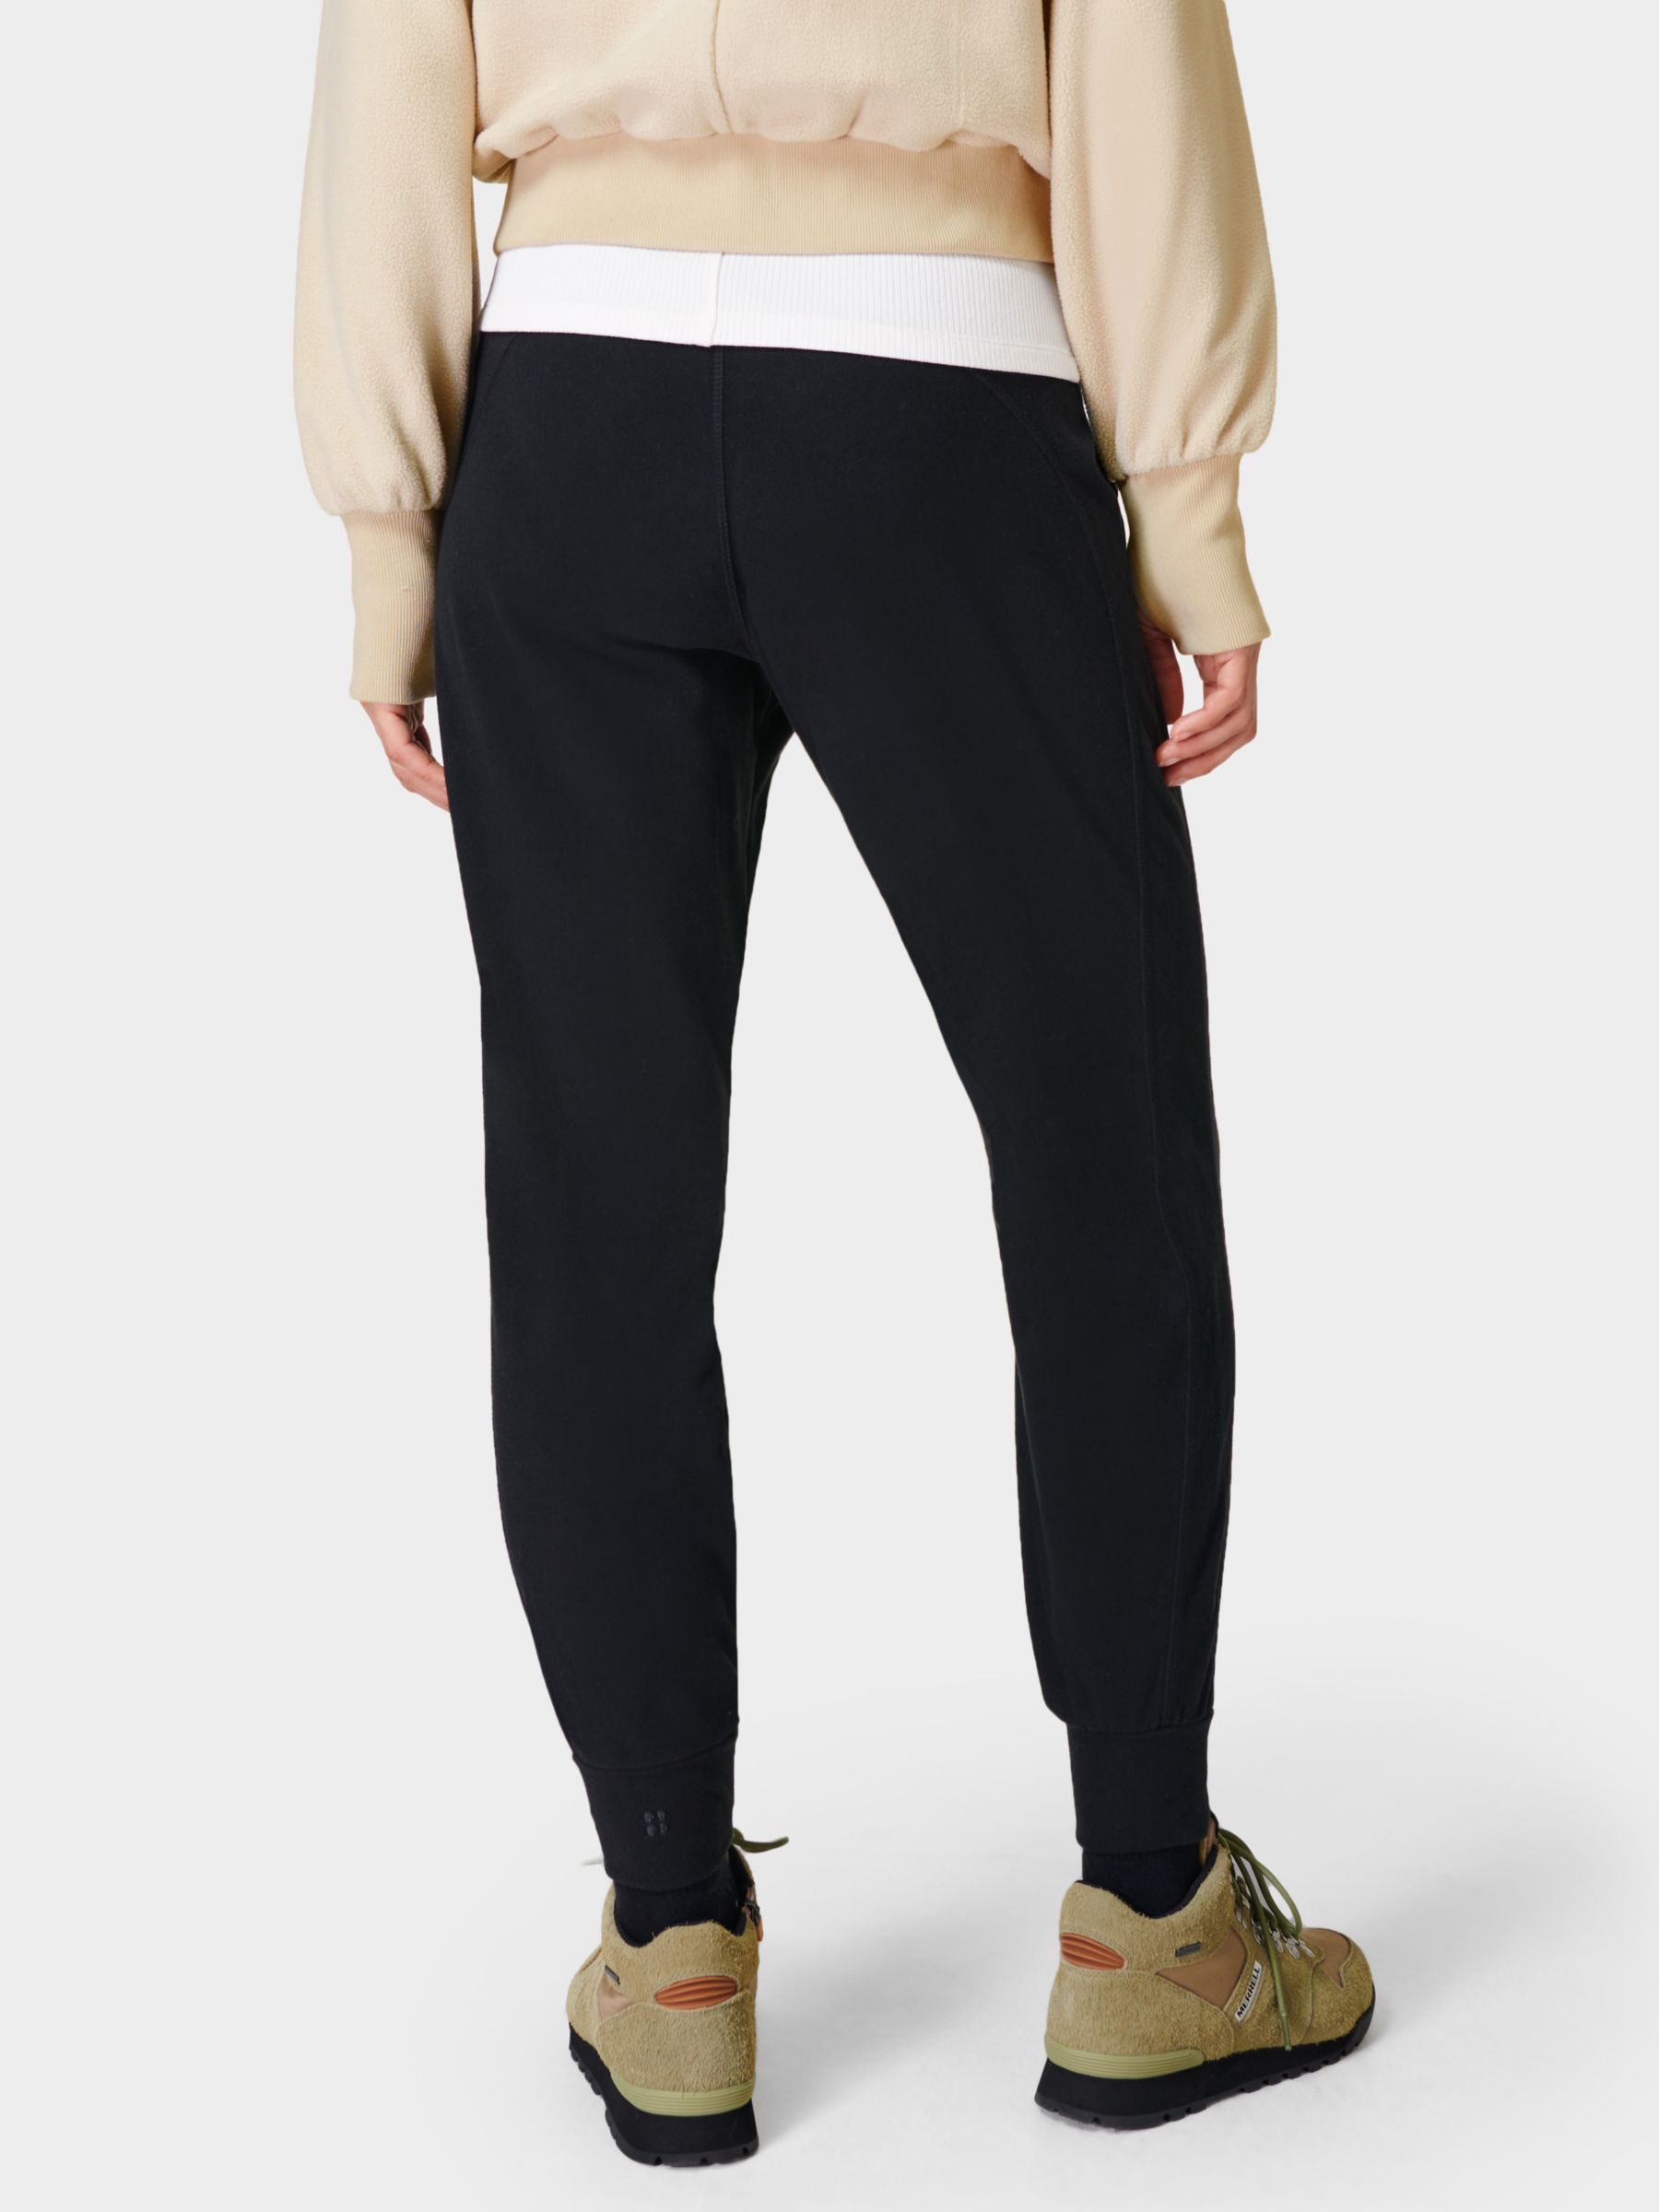 Sweaty Betty Gary Luxe Fleece Yoga Pants, Black at John Lewis & Partners